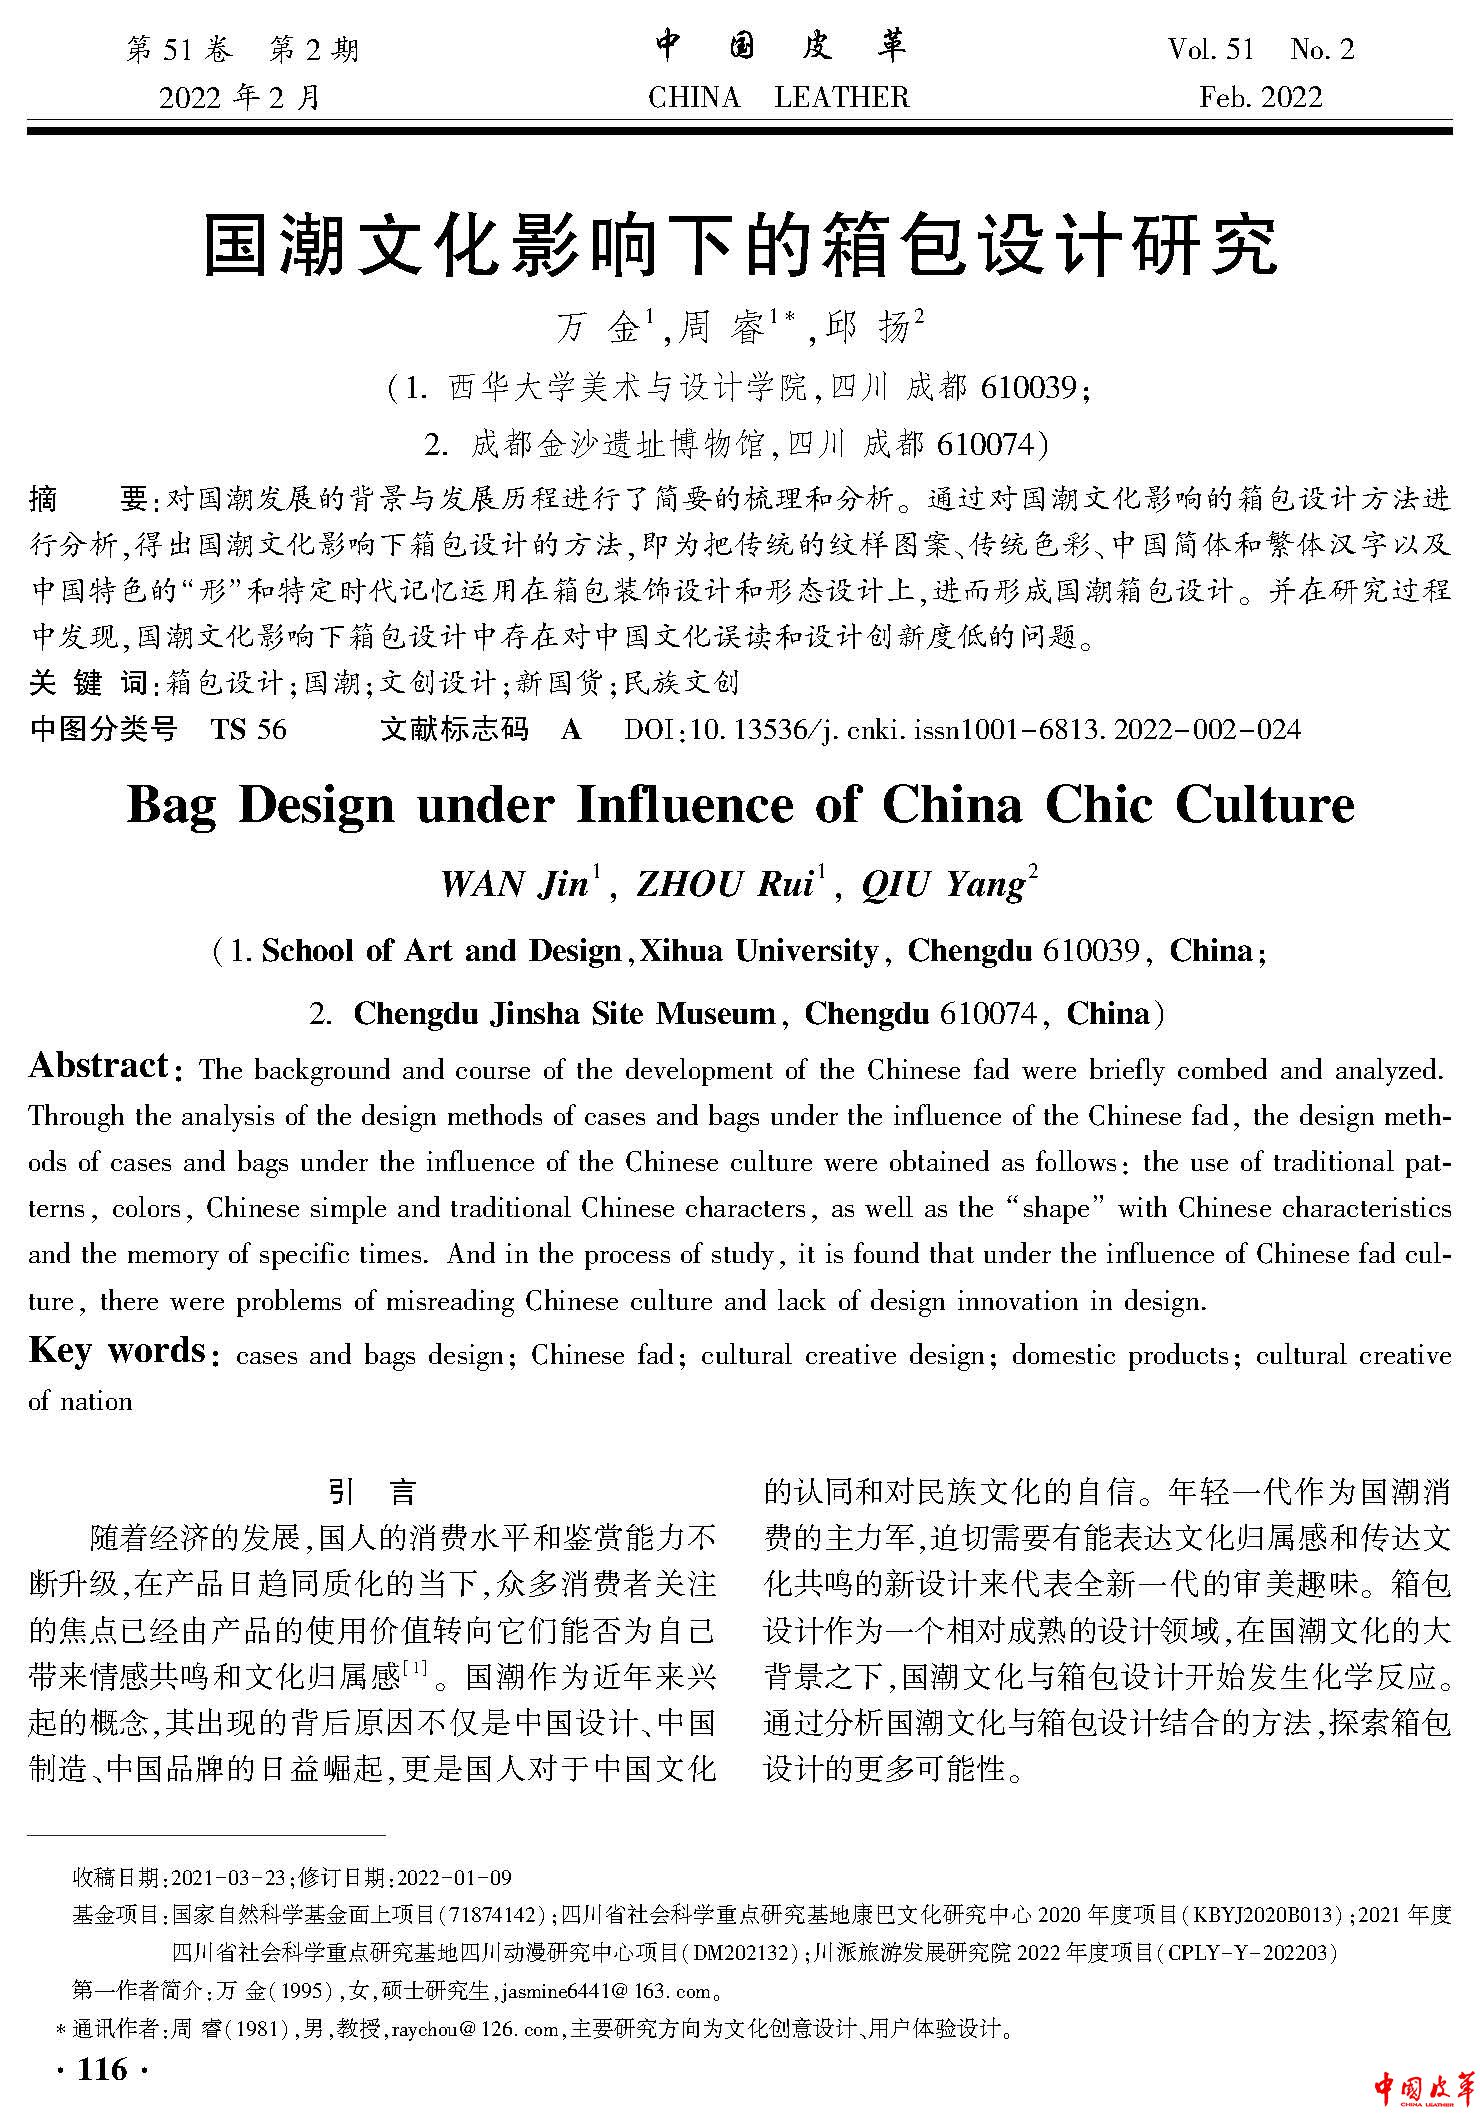 页面提取自－中国皮革2022年第2期P1-149-9.jpg